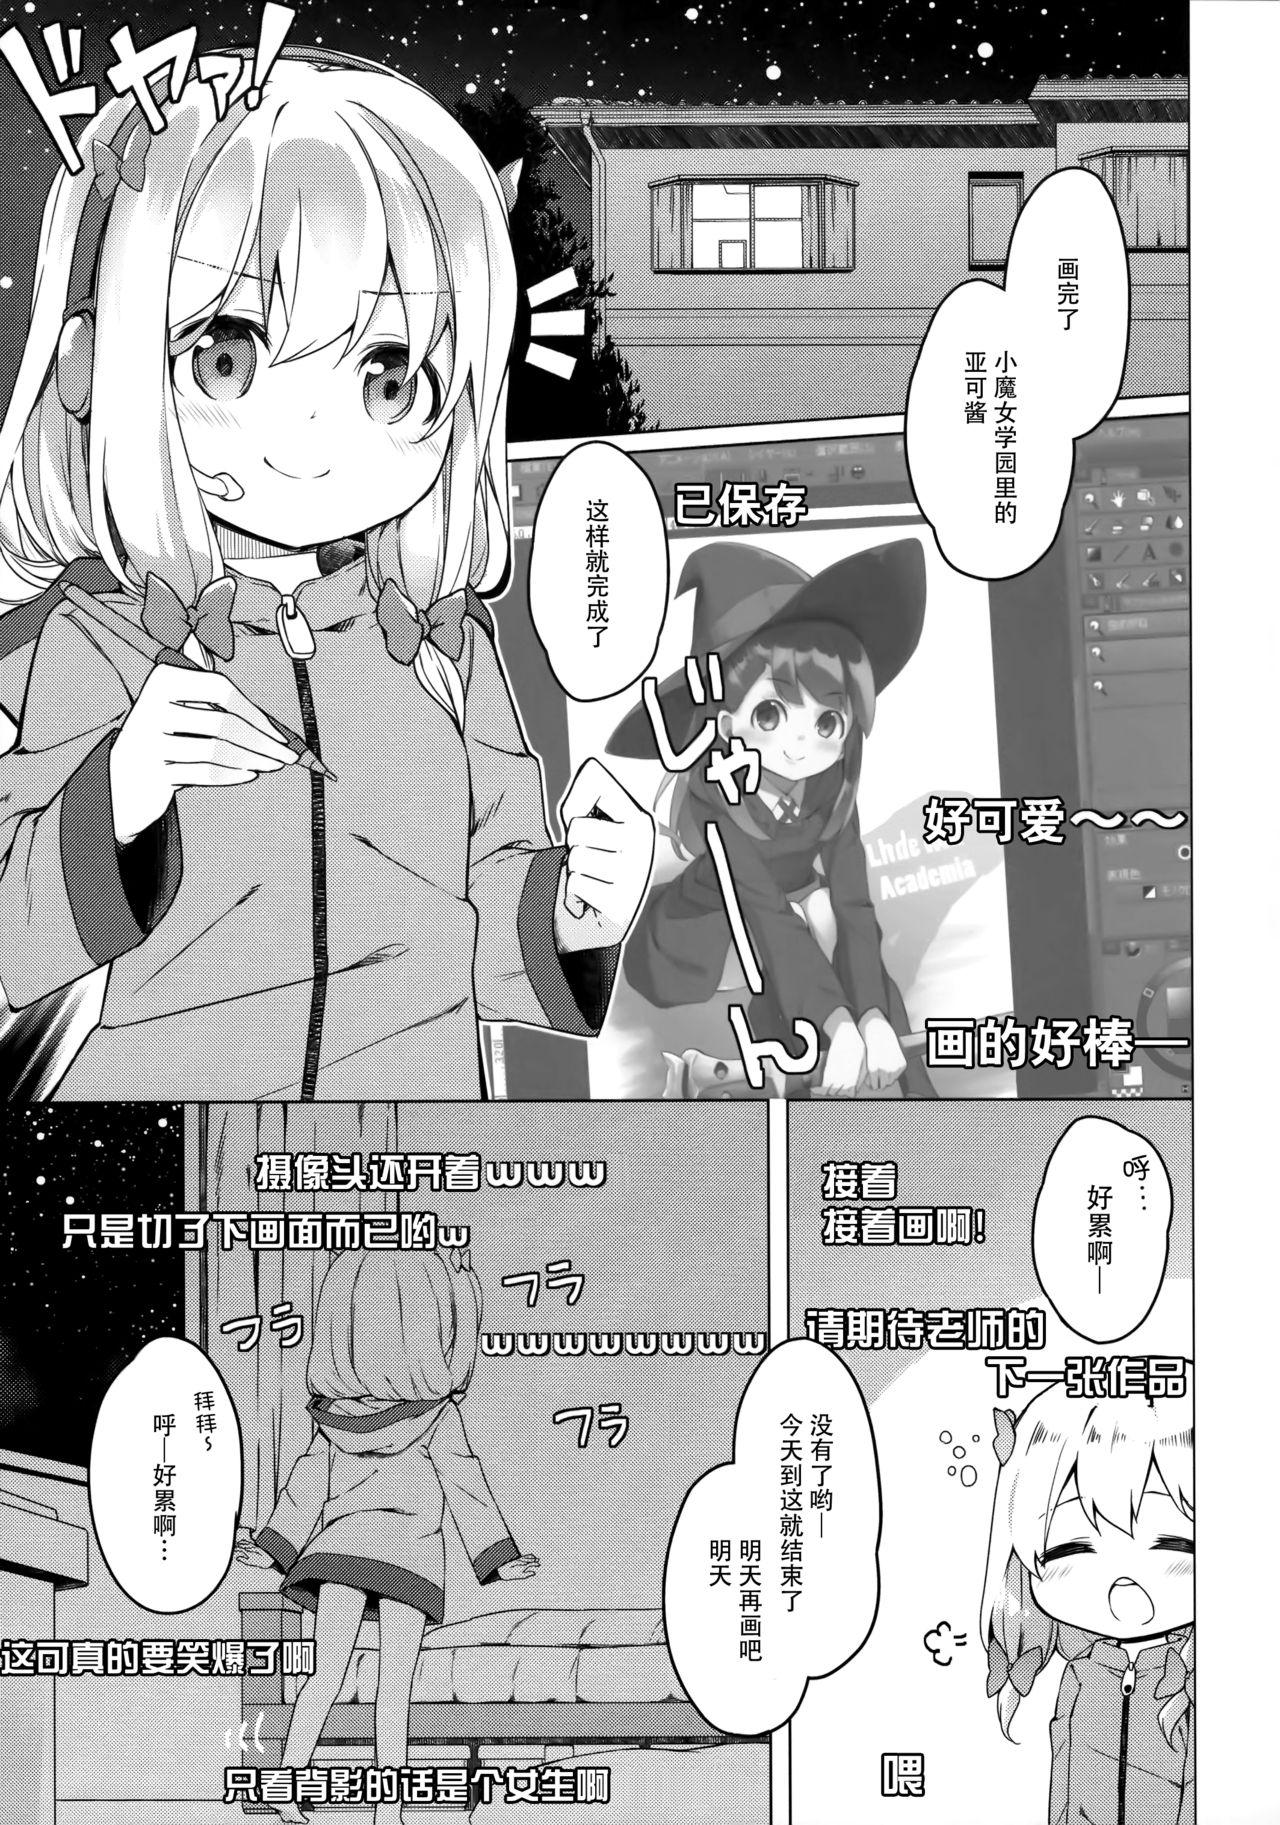 Stunning Yatta ne Sagiri-chan Shiryou ga Fueru ne! - Eromanga sensei Dicks - Page 5